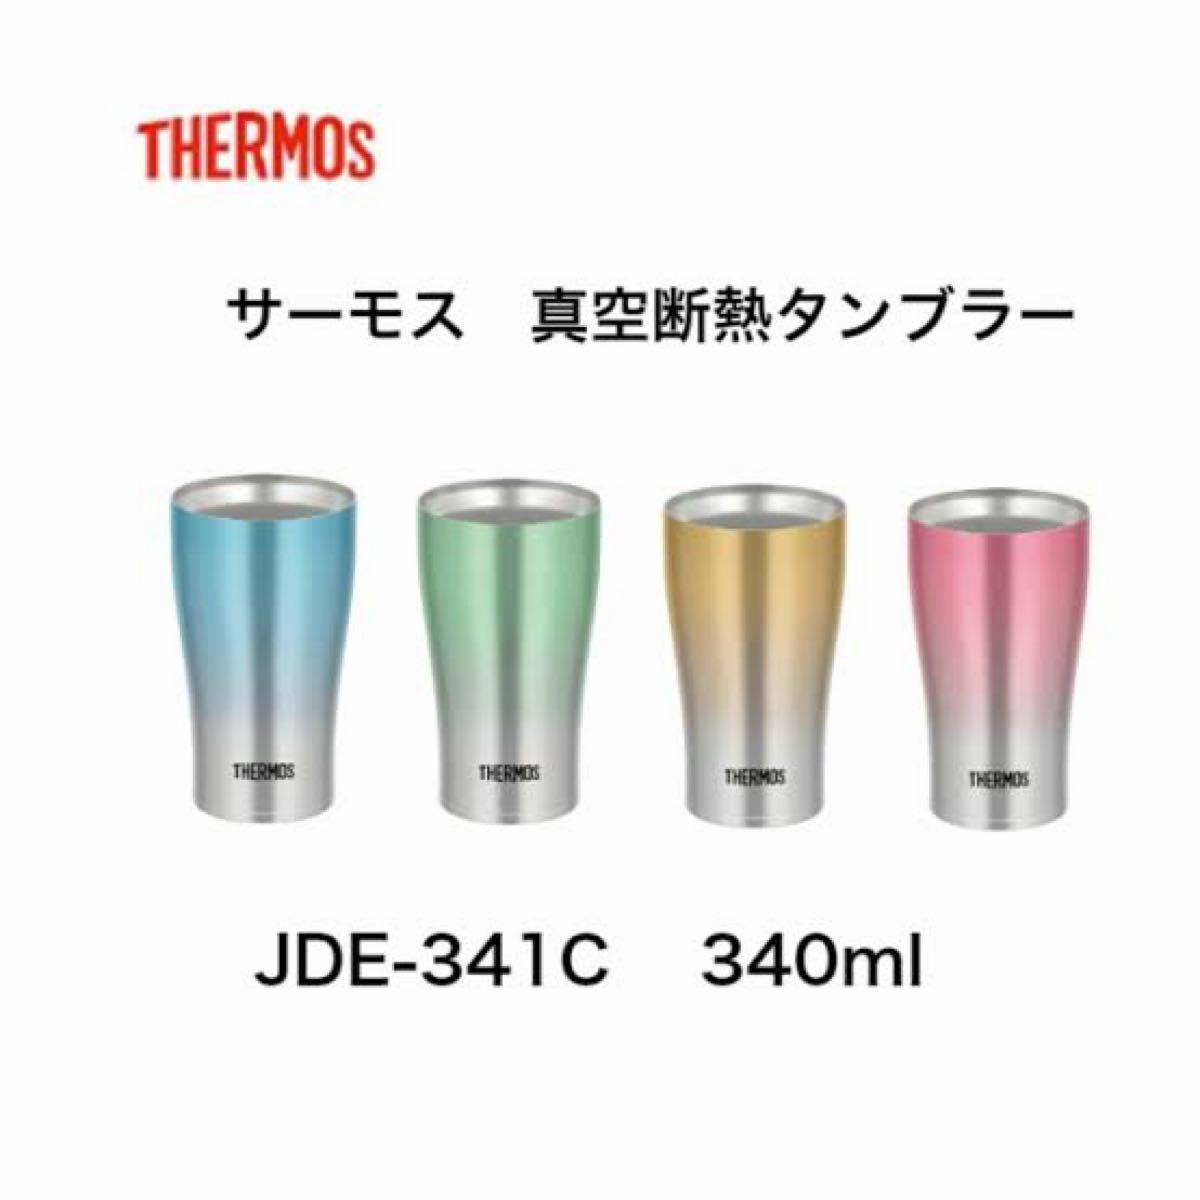 THERMOS 真空断熱タンブラー JDE-341C 4色セット サーモス 保温 保冷 バラ売り不可